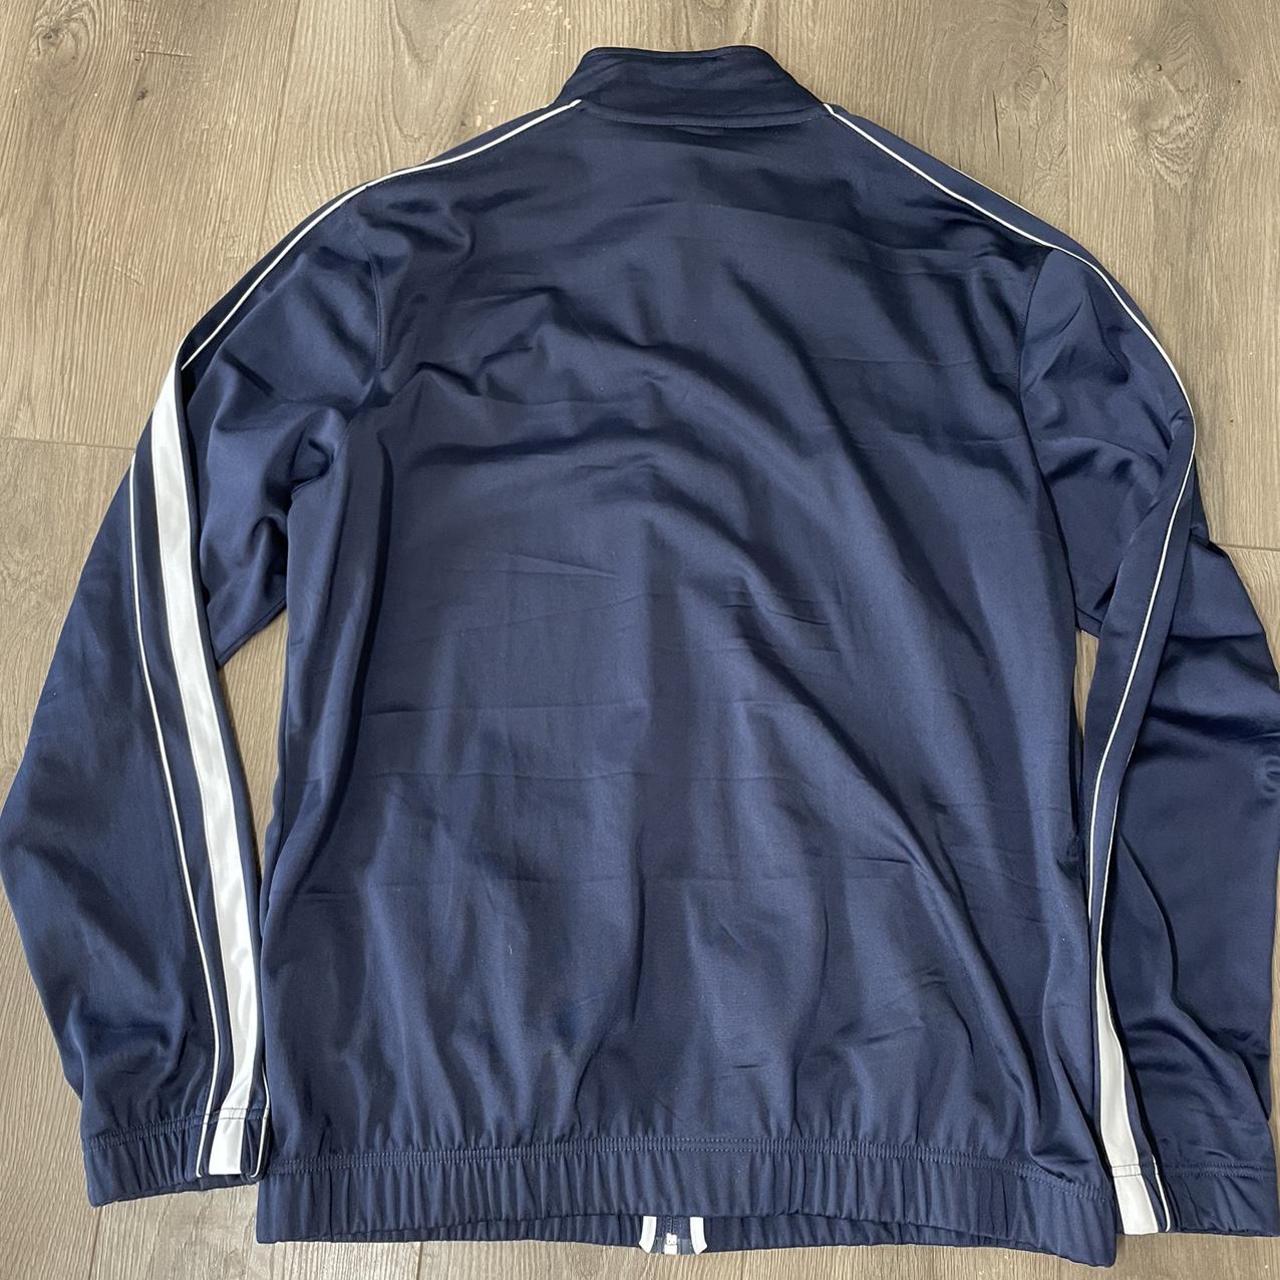 Nike Men's Blue and Navy Jacket | Depop